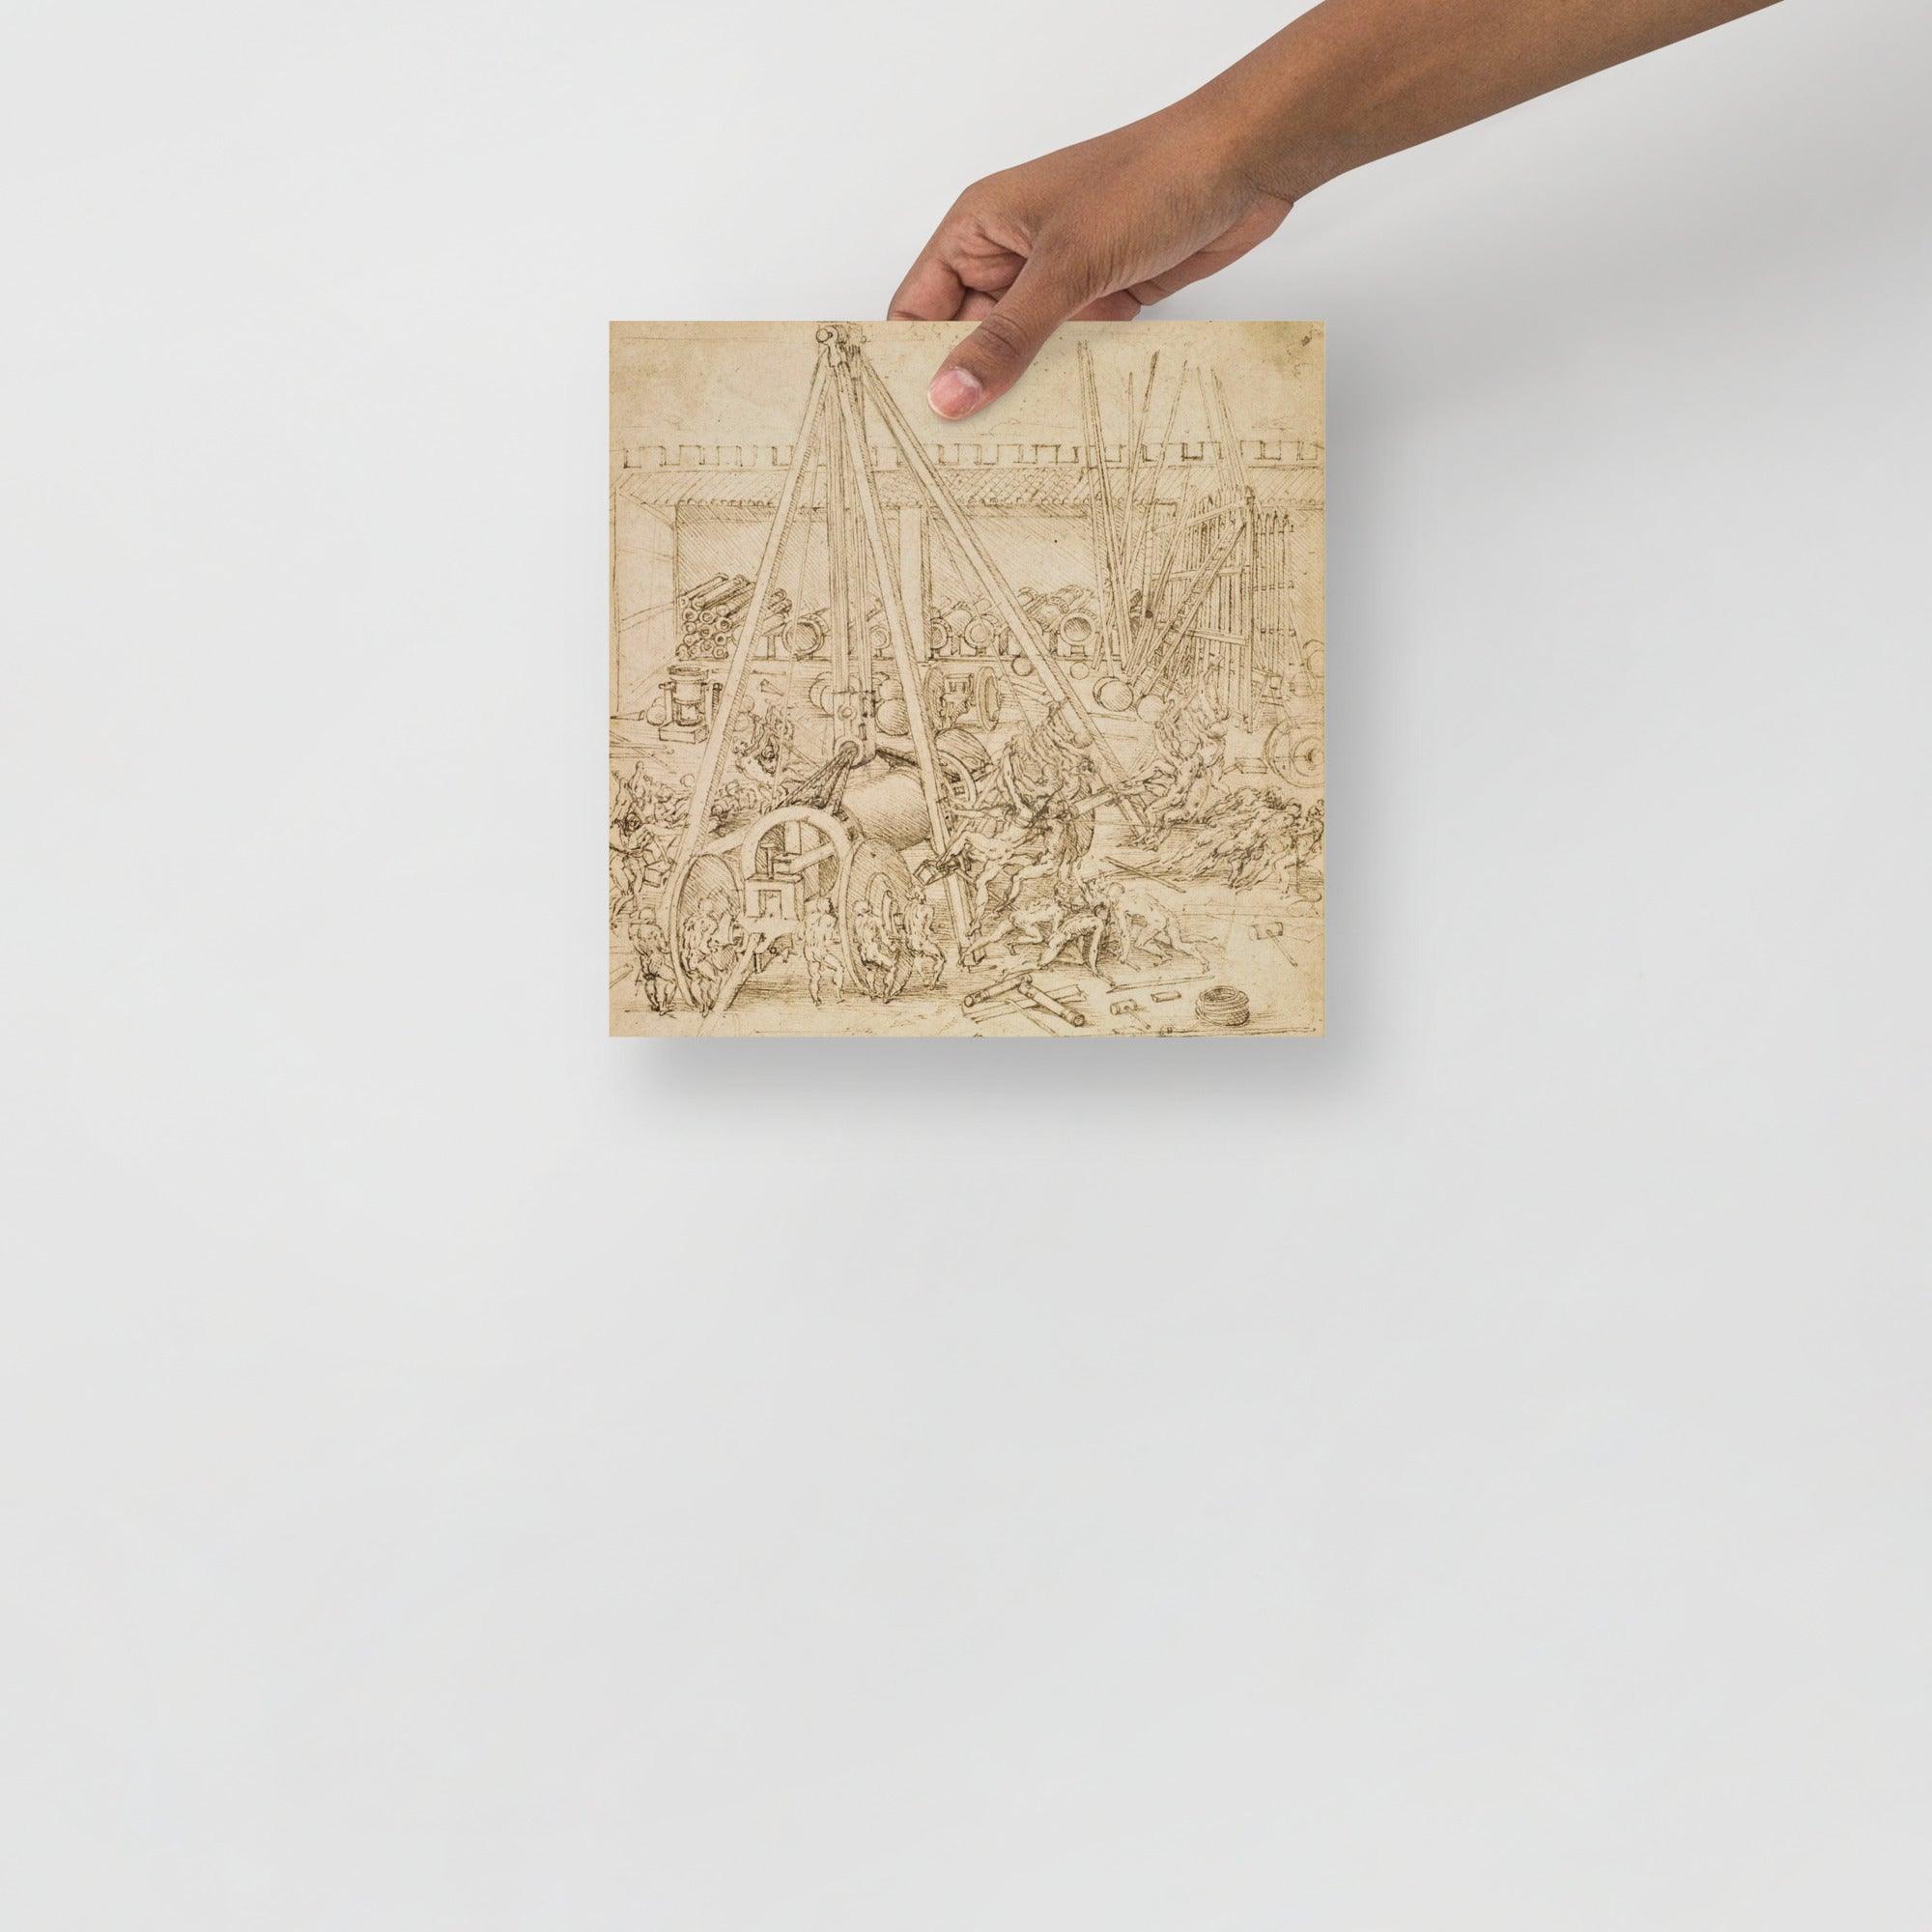 A Scene in an Arsenal by Leonardo Da Vinci poster on a plain backdrop in size 10x10”.